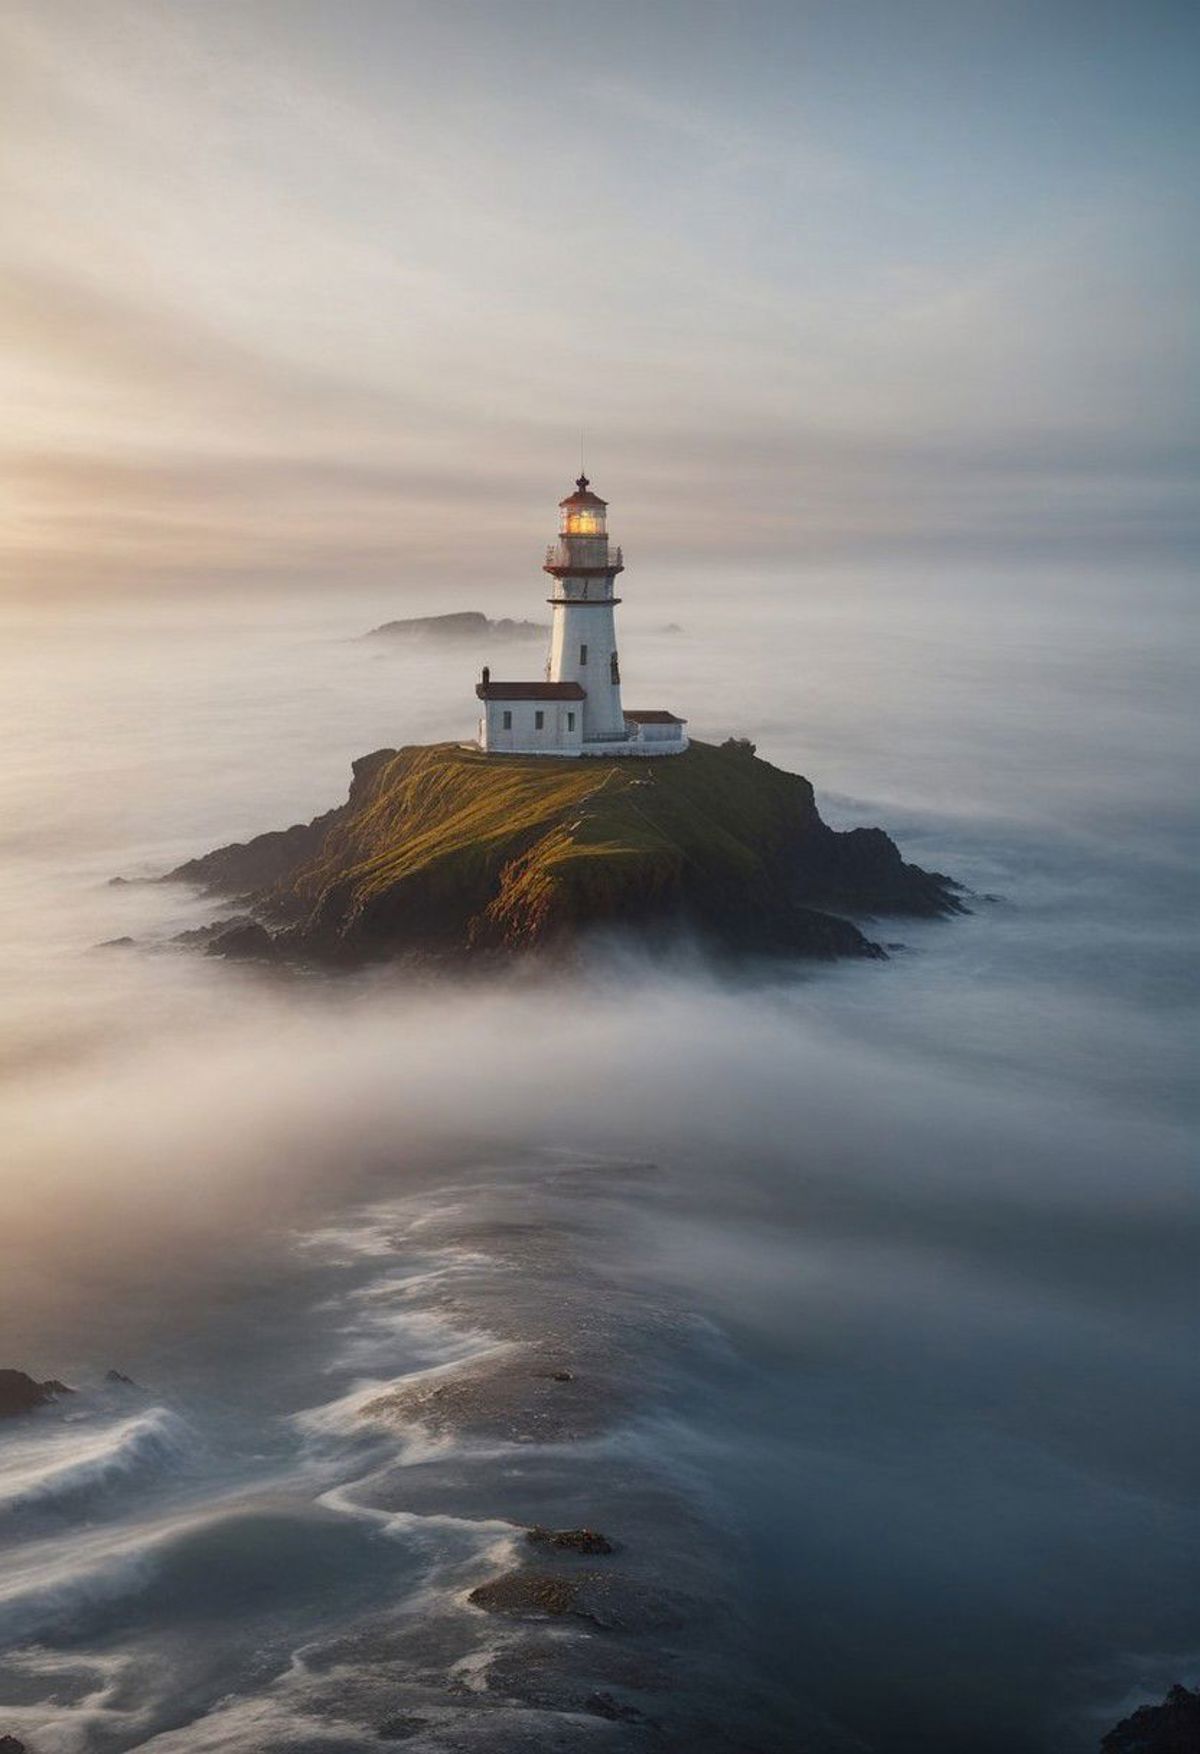 A lighthouse on a rocky island in the foggy ocean.